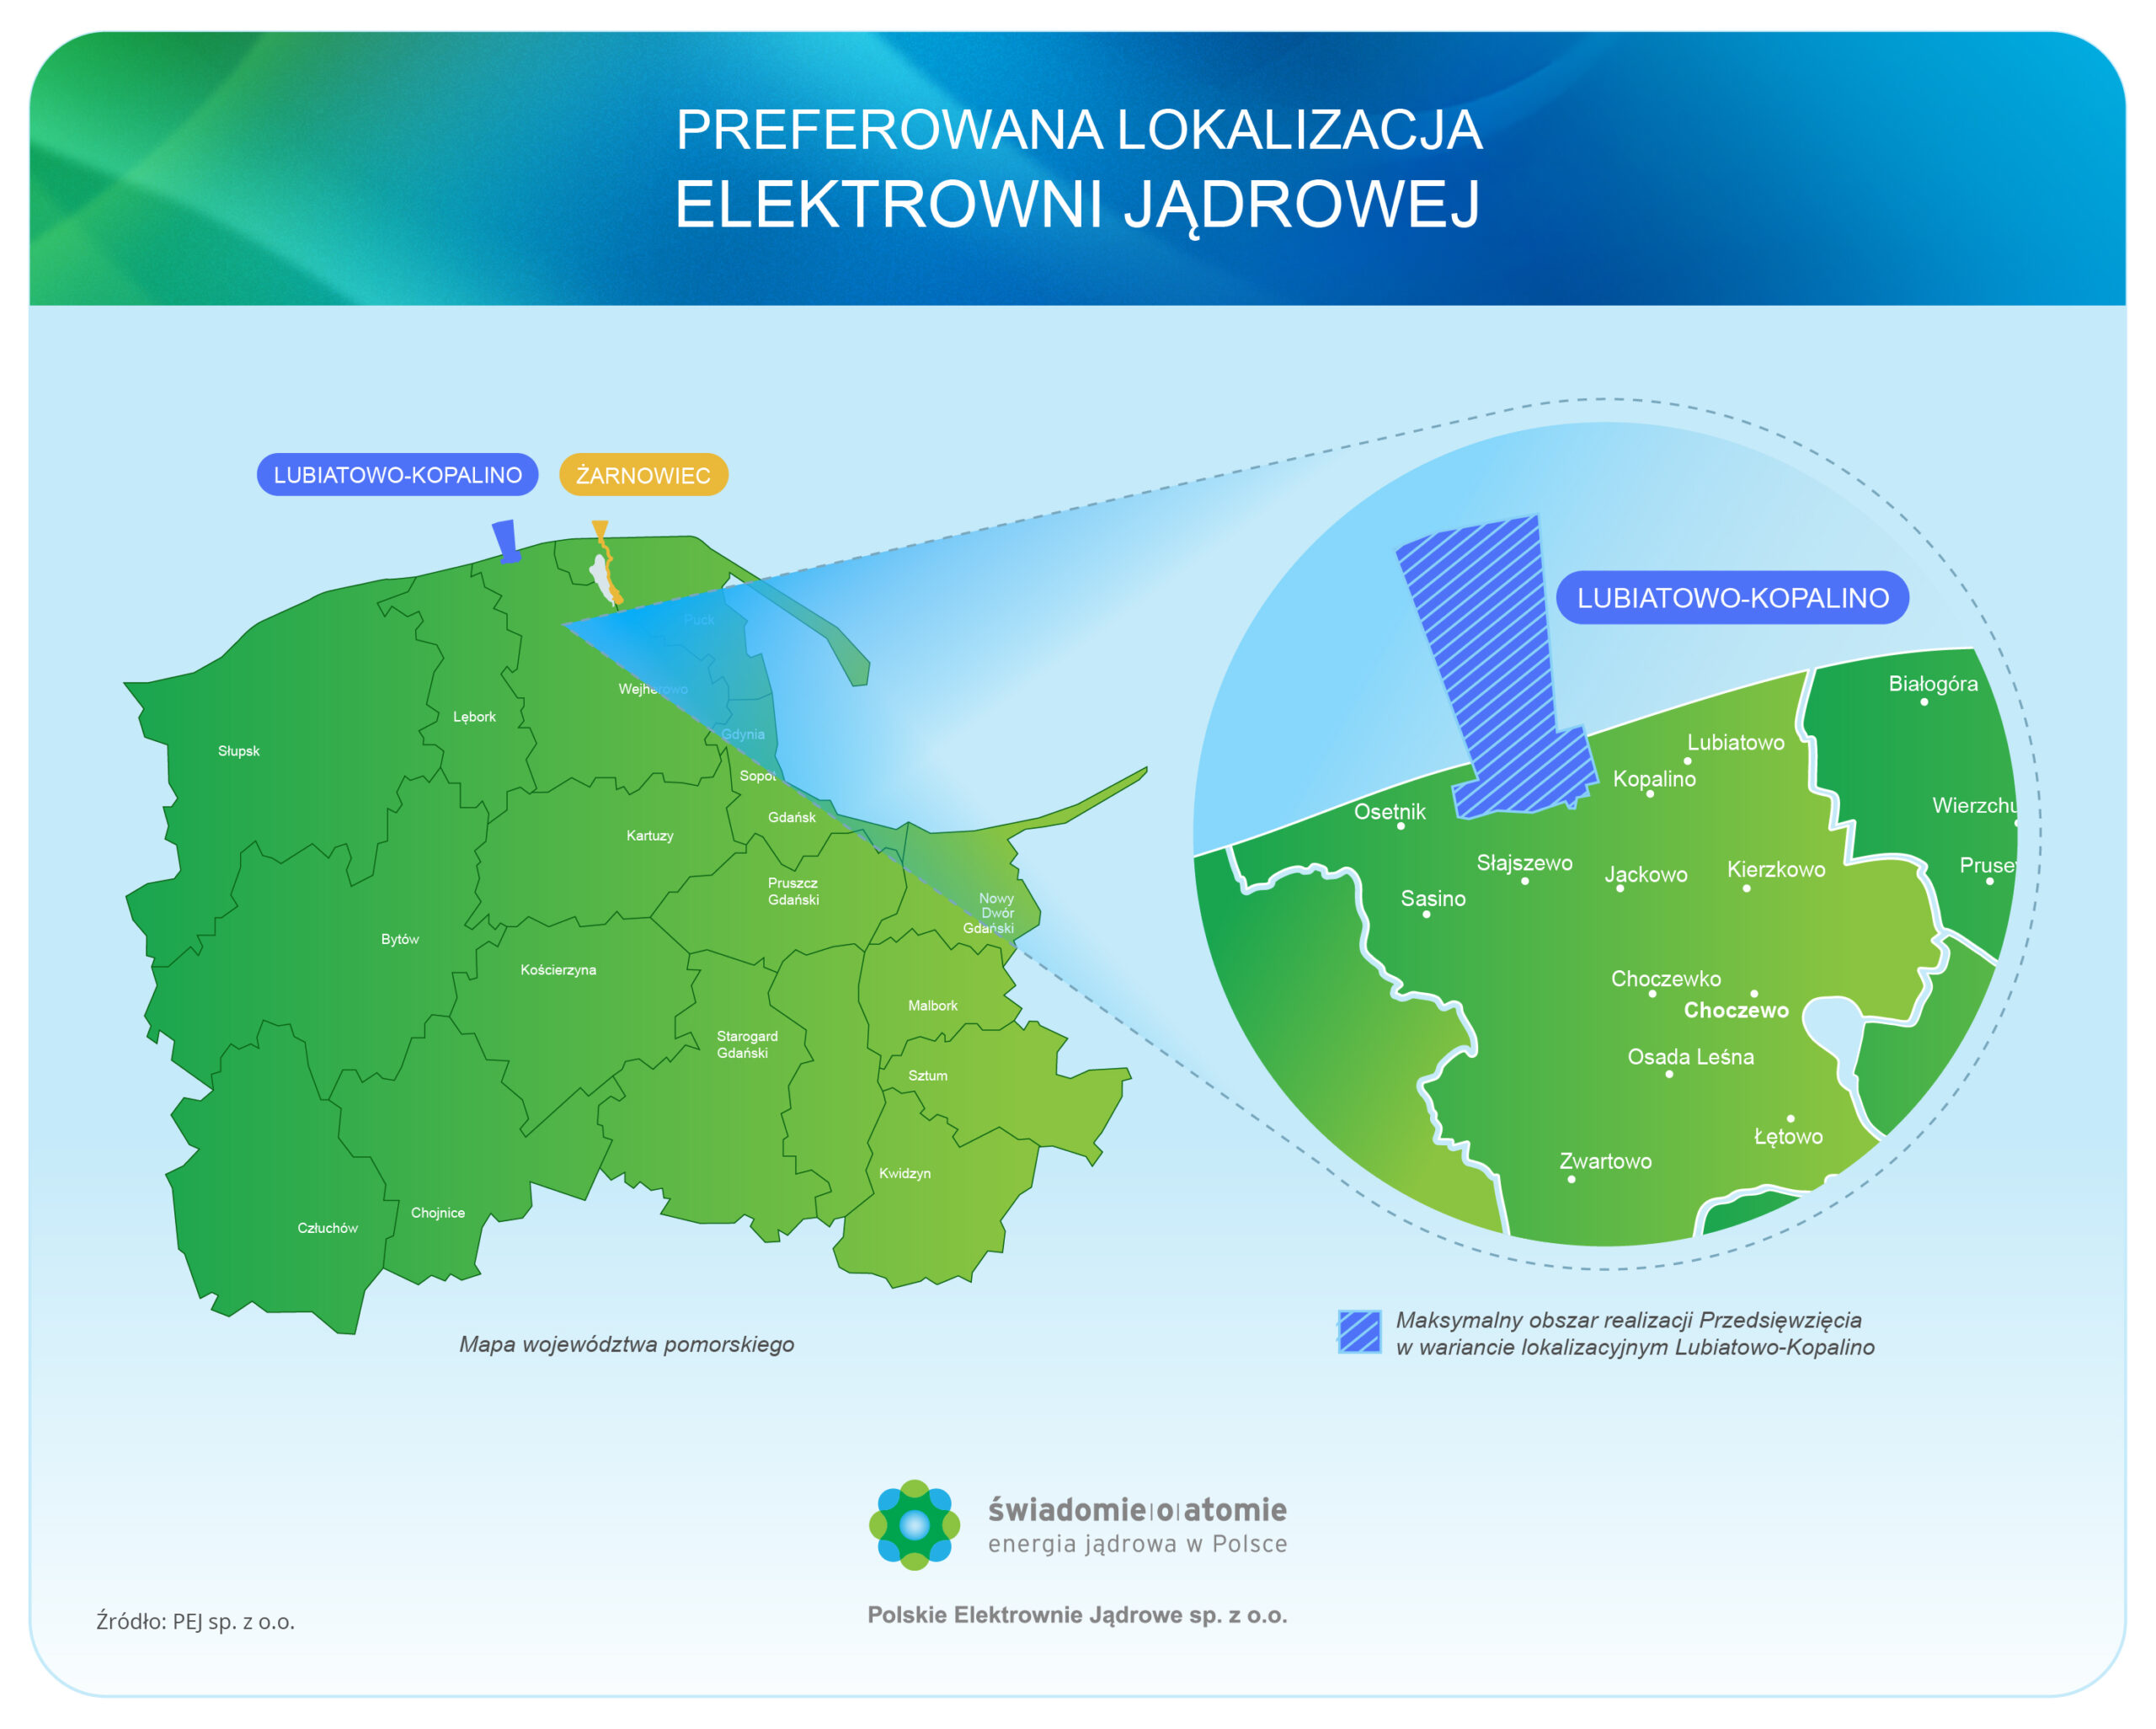 Preferowana lokalizacja elektrowni jadrowej w Polsce (1)